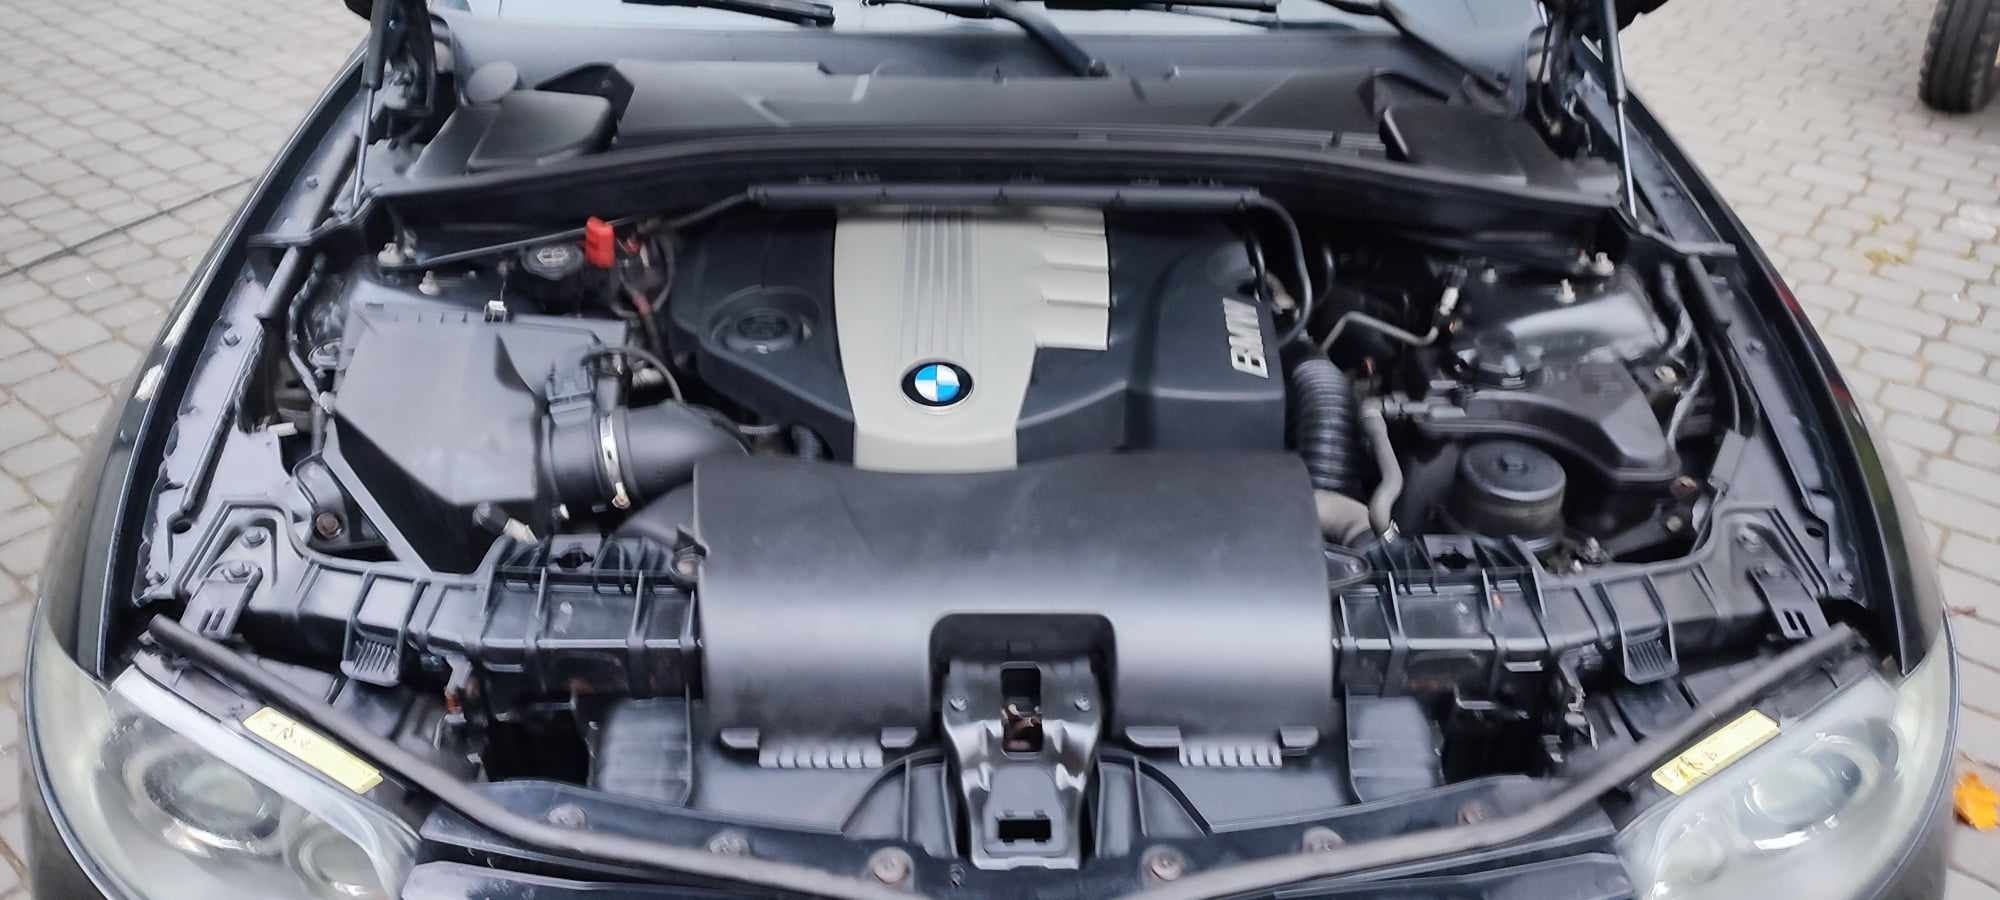 BMW Seria 1 model E87 120D bezwypadkowy, 230 KM, full opcja